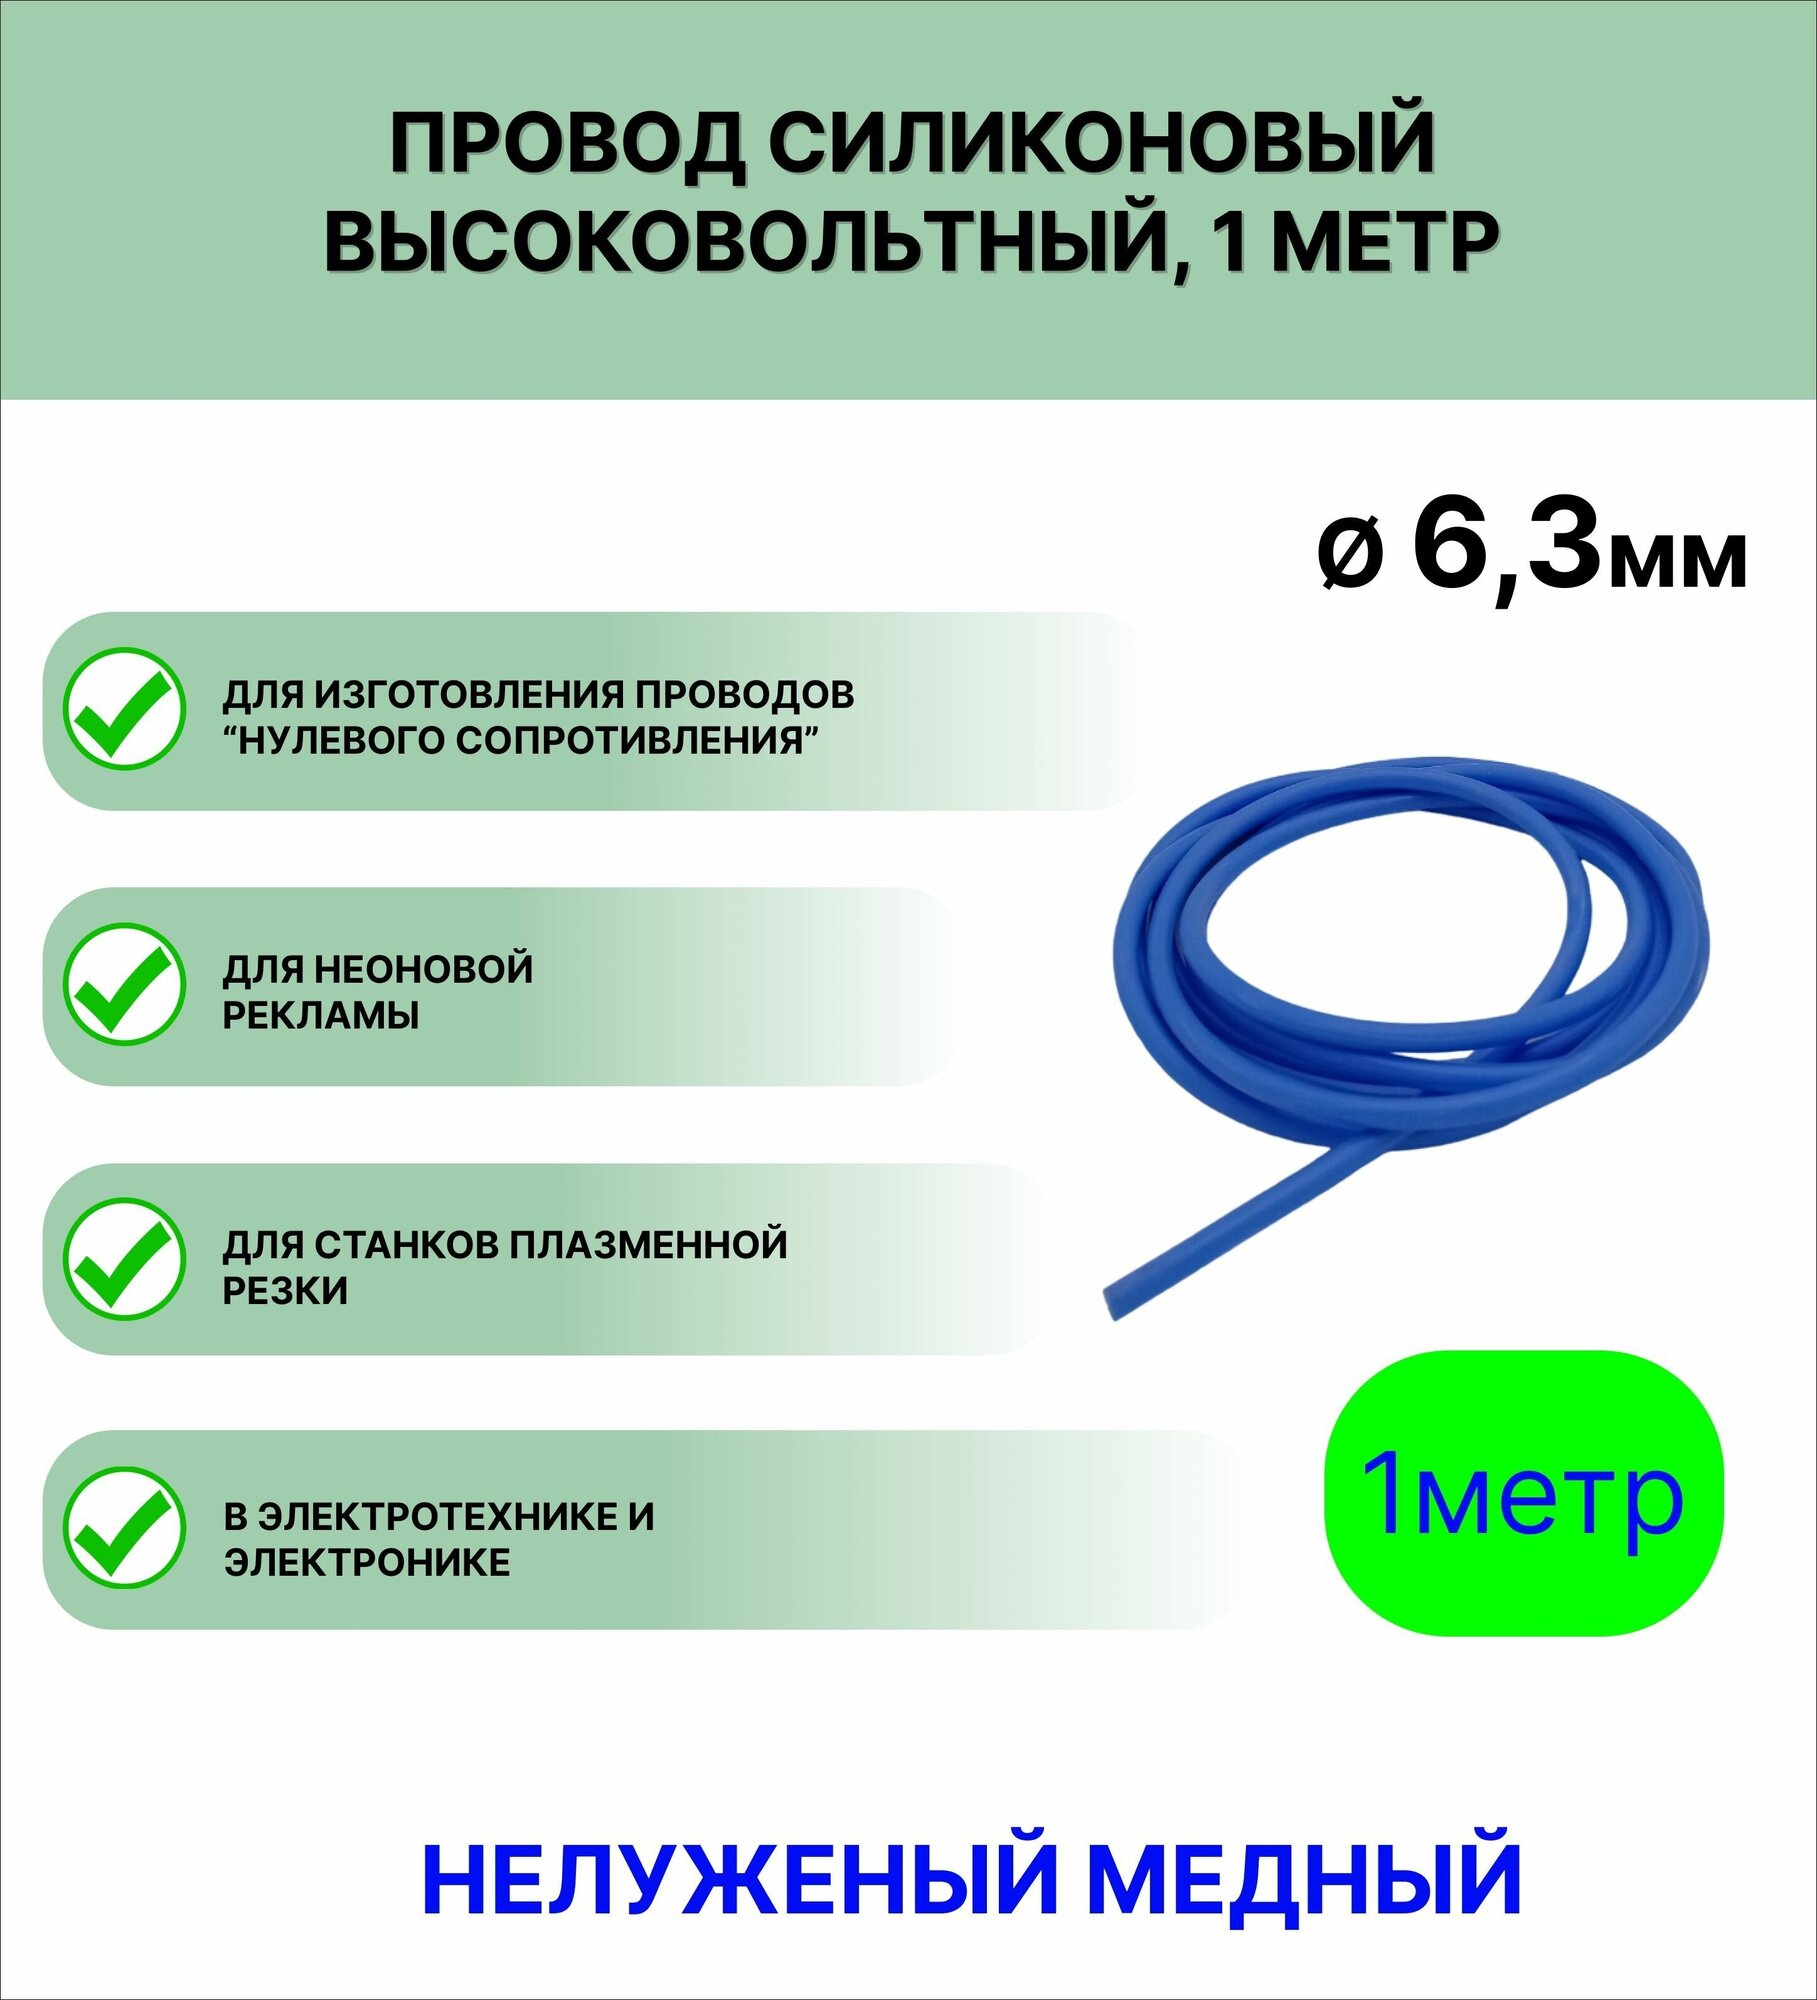 Провод силиконовый высоковольтный пркв 1.0(6,3 мм) синий, 1 метр